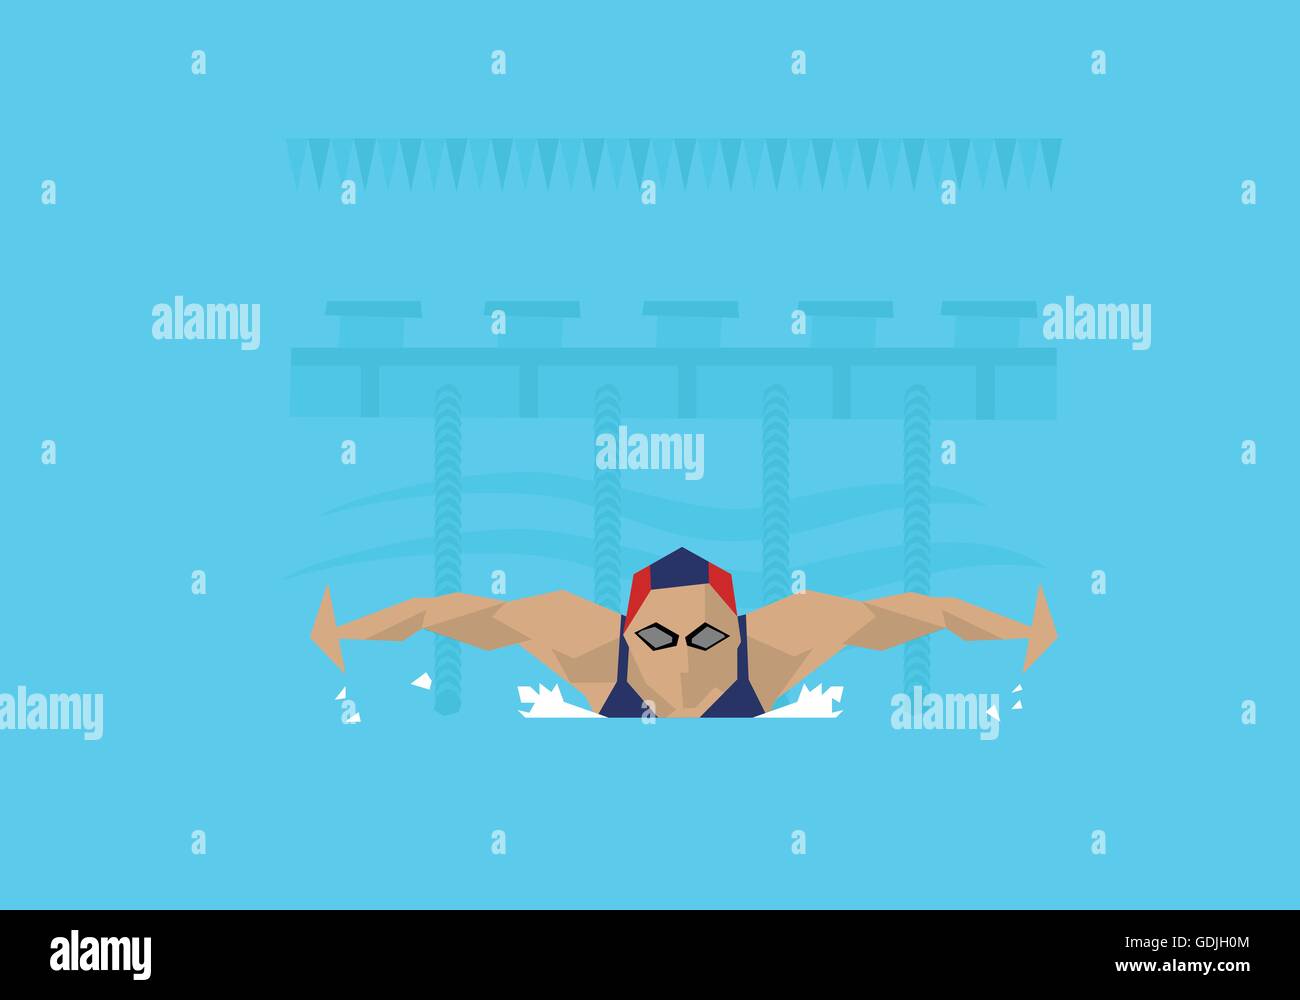 Darstellung der weiblichen Schwimmer im Wettbewerb mit Schmetterling-Event Stock Vektor